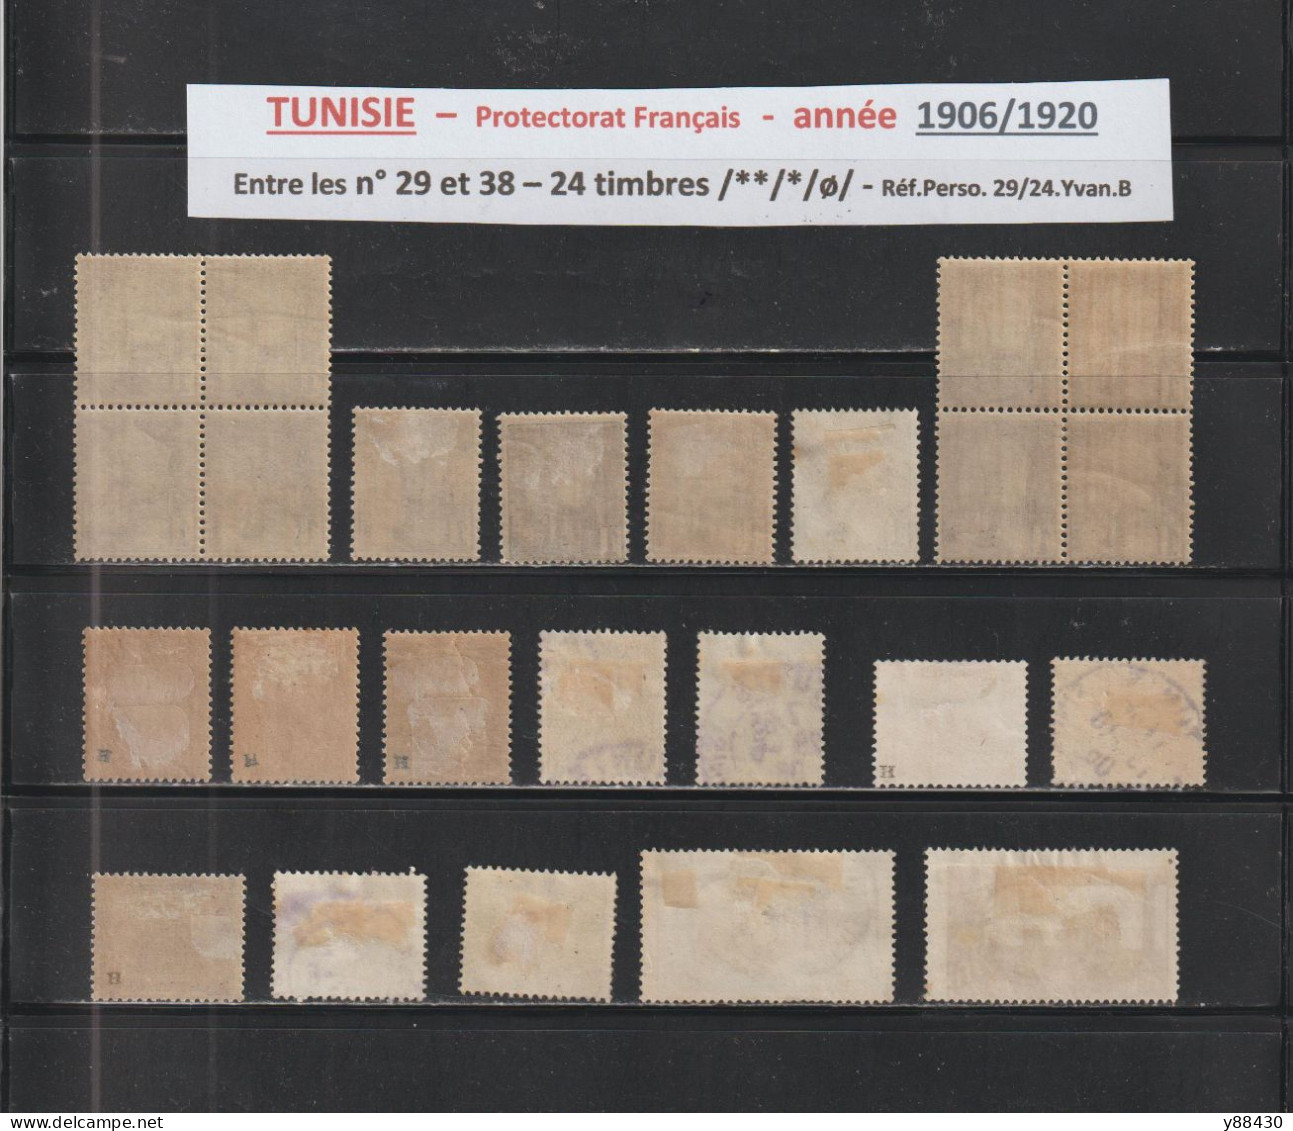 TUNISIE -  Protectorat Français - 24 Timbres Neufs Et Oblitérés  - Entre Les N° 29 Et 38 De 1906/1920 - 2 Scan - Unused Stamps